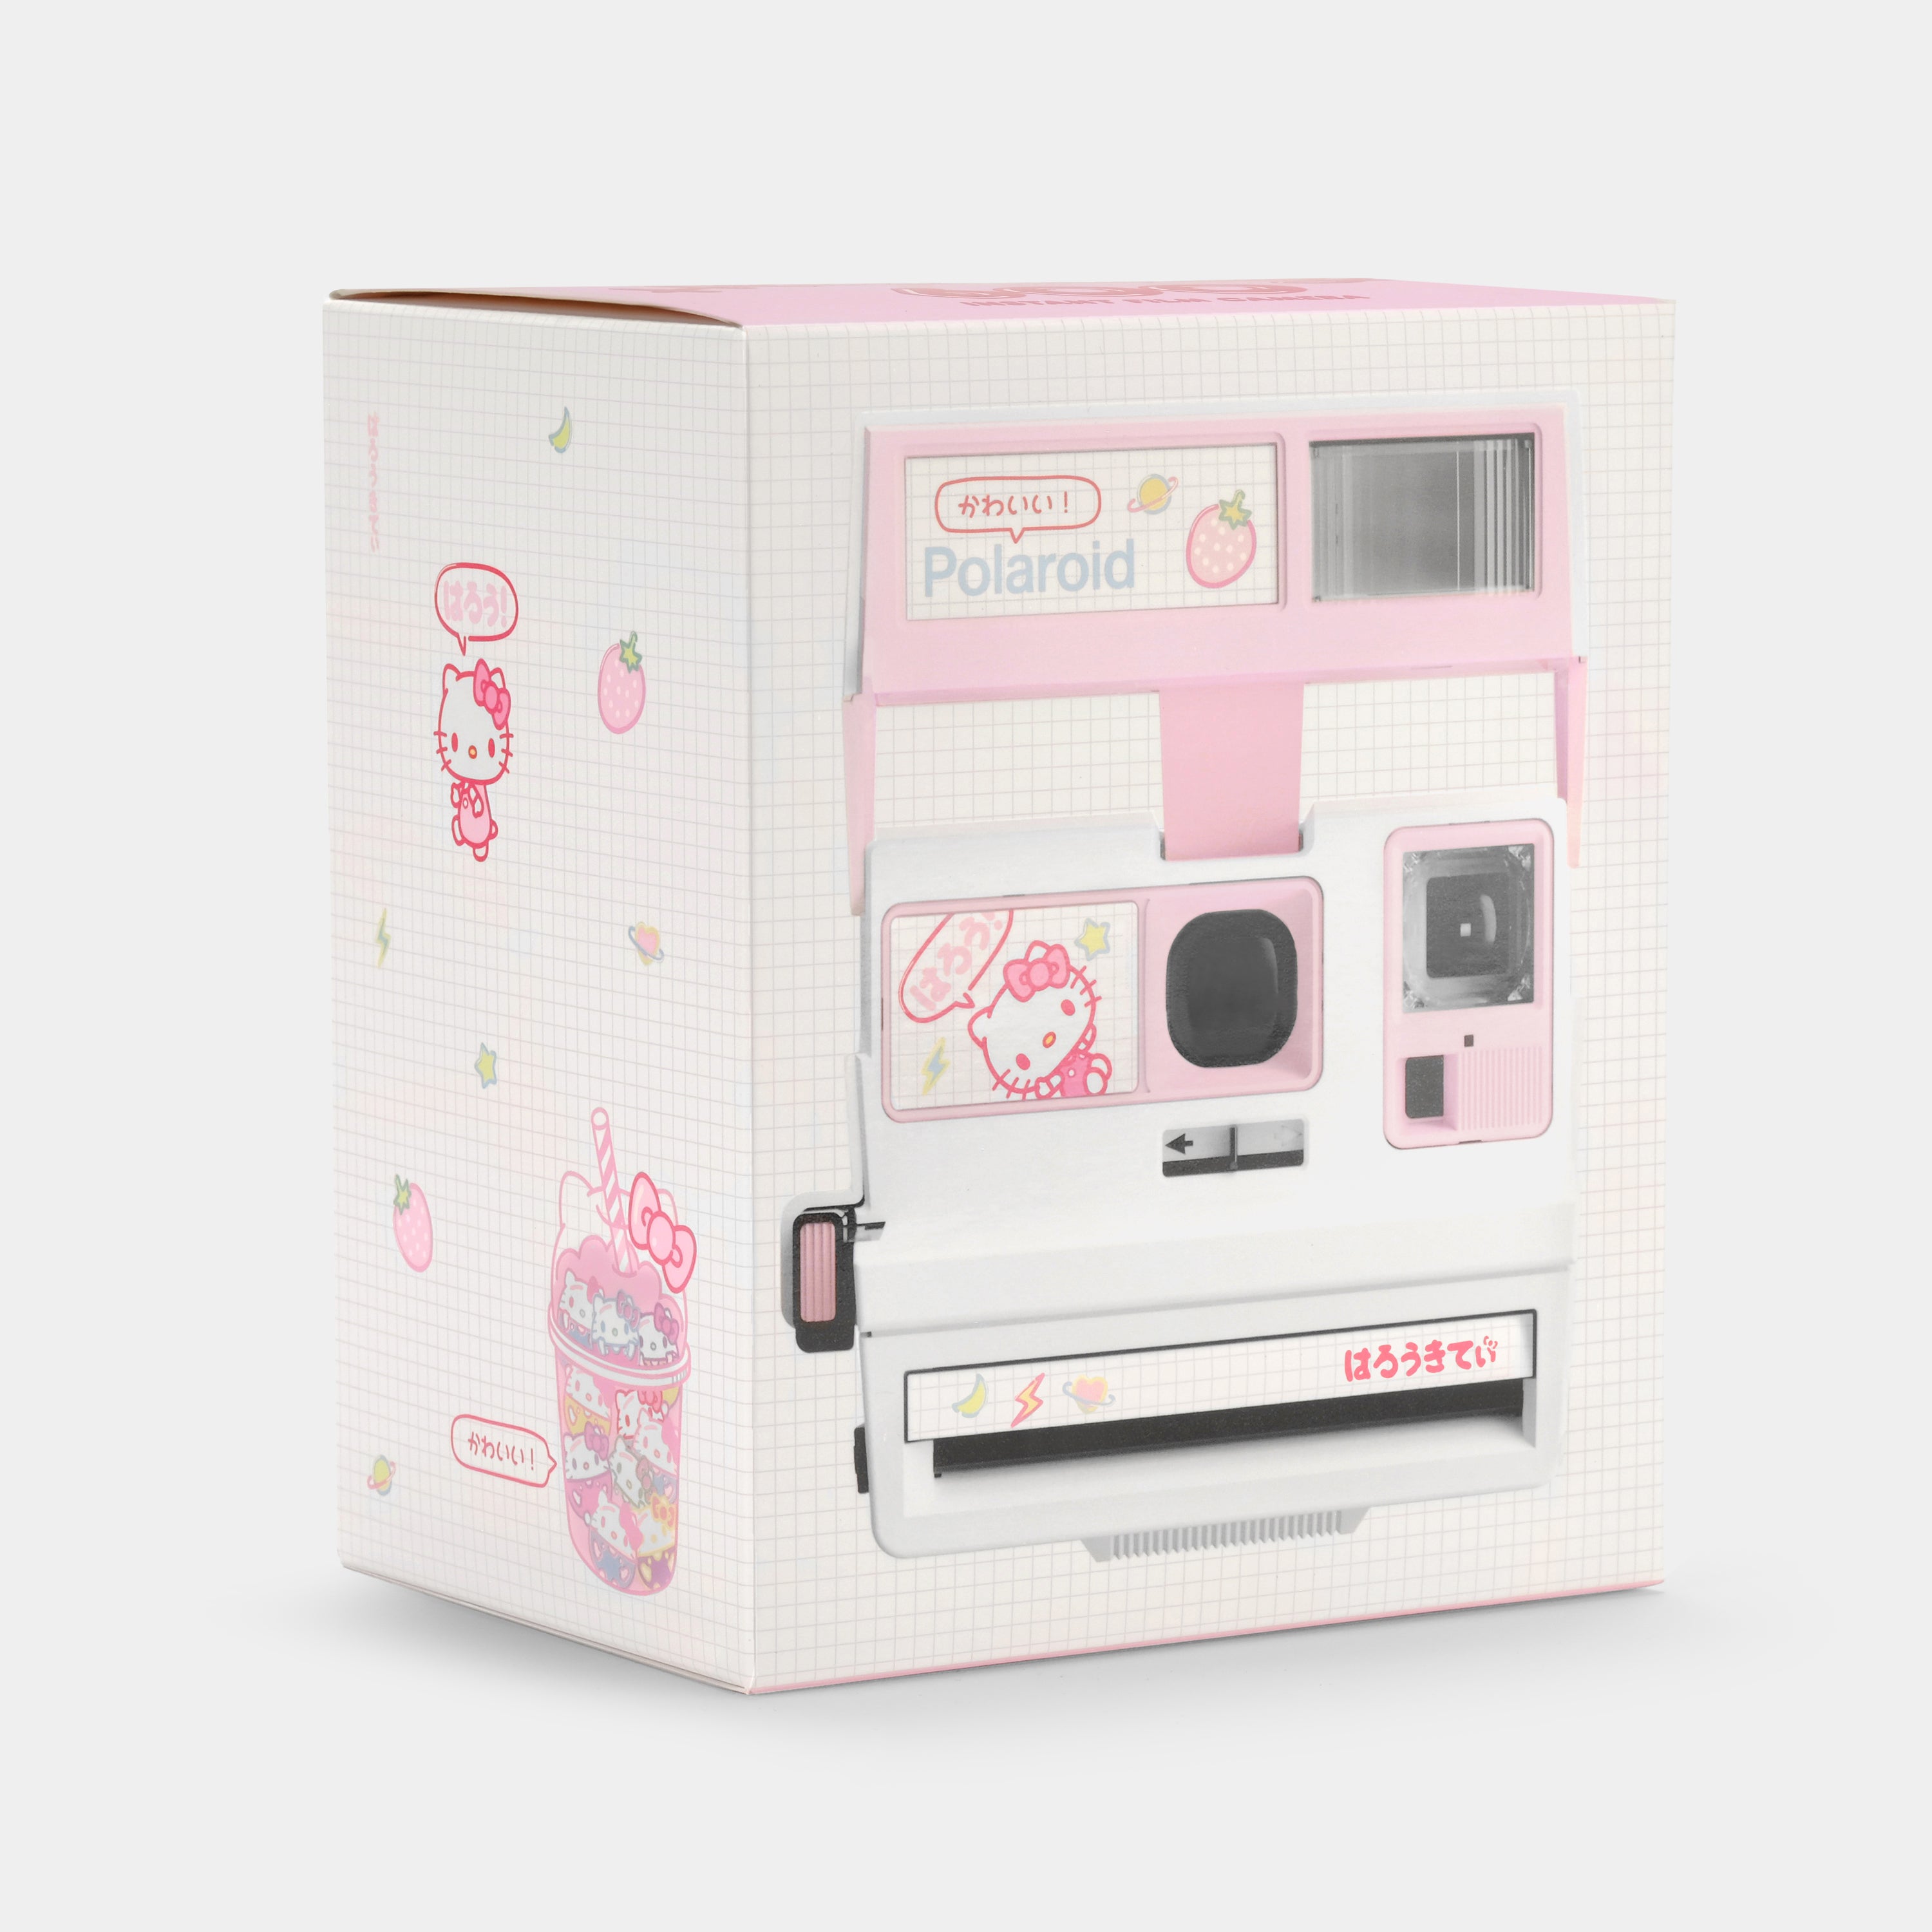 Polaroid 600 Hello Kitty Strawberry Kawaii Instant Film Camera